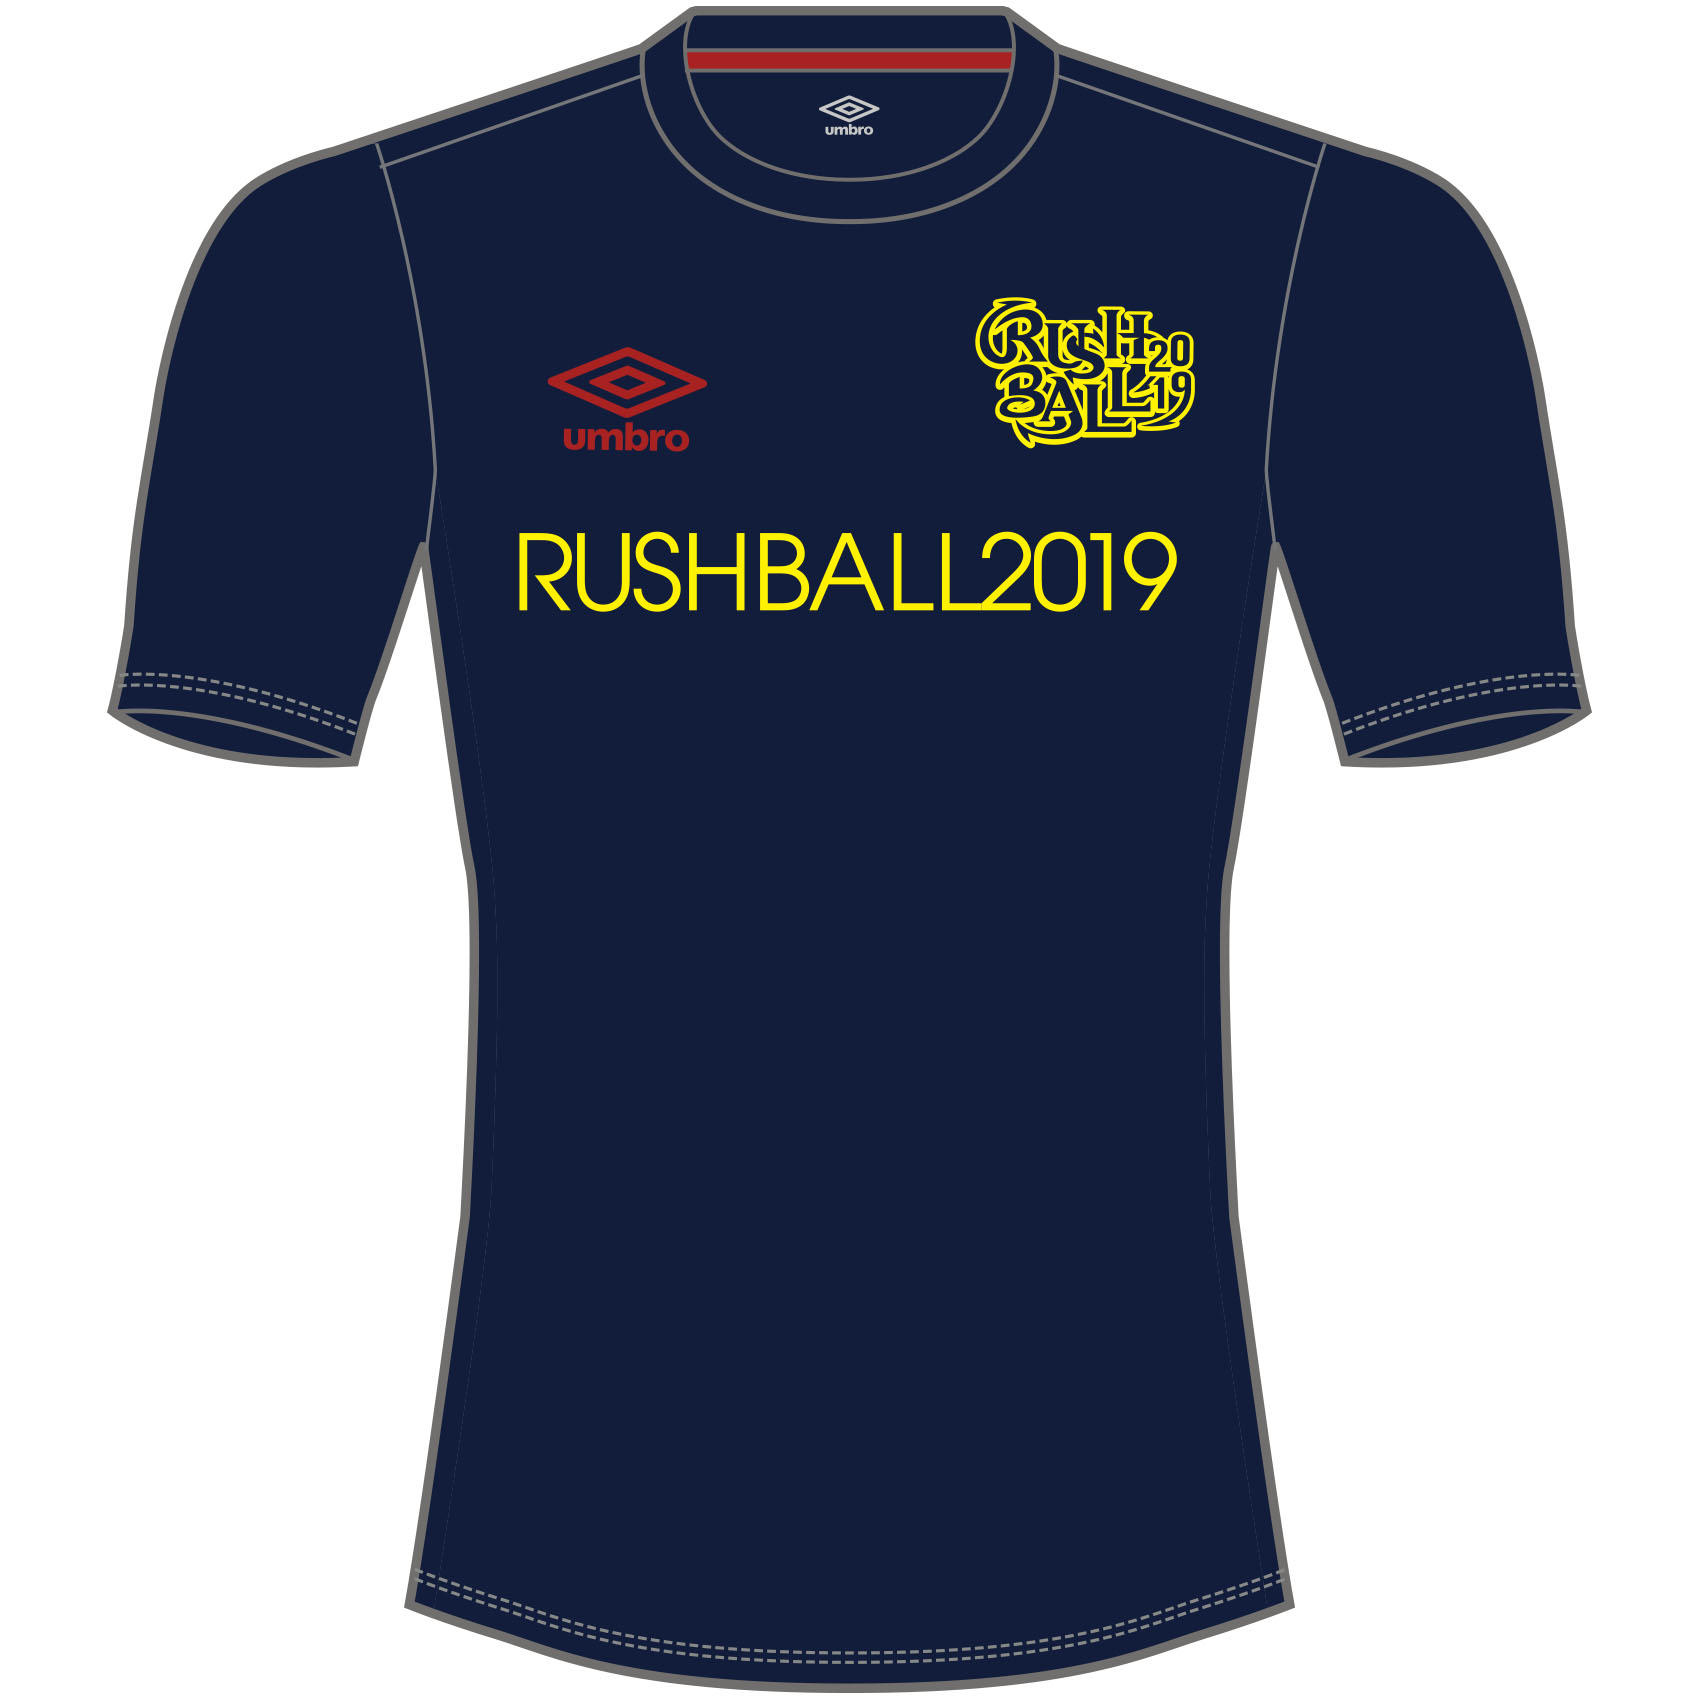 GOODS | RUSH BALL 2019